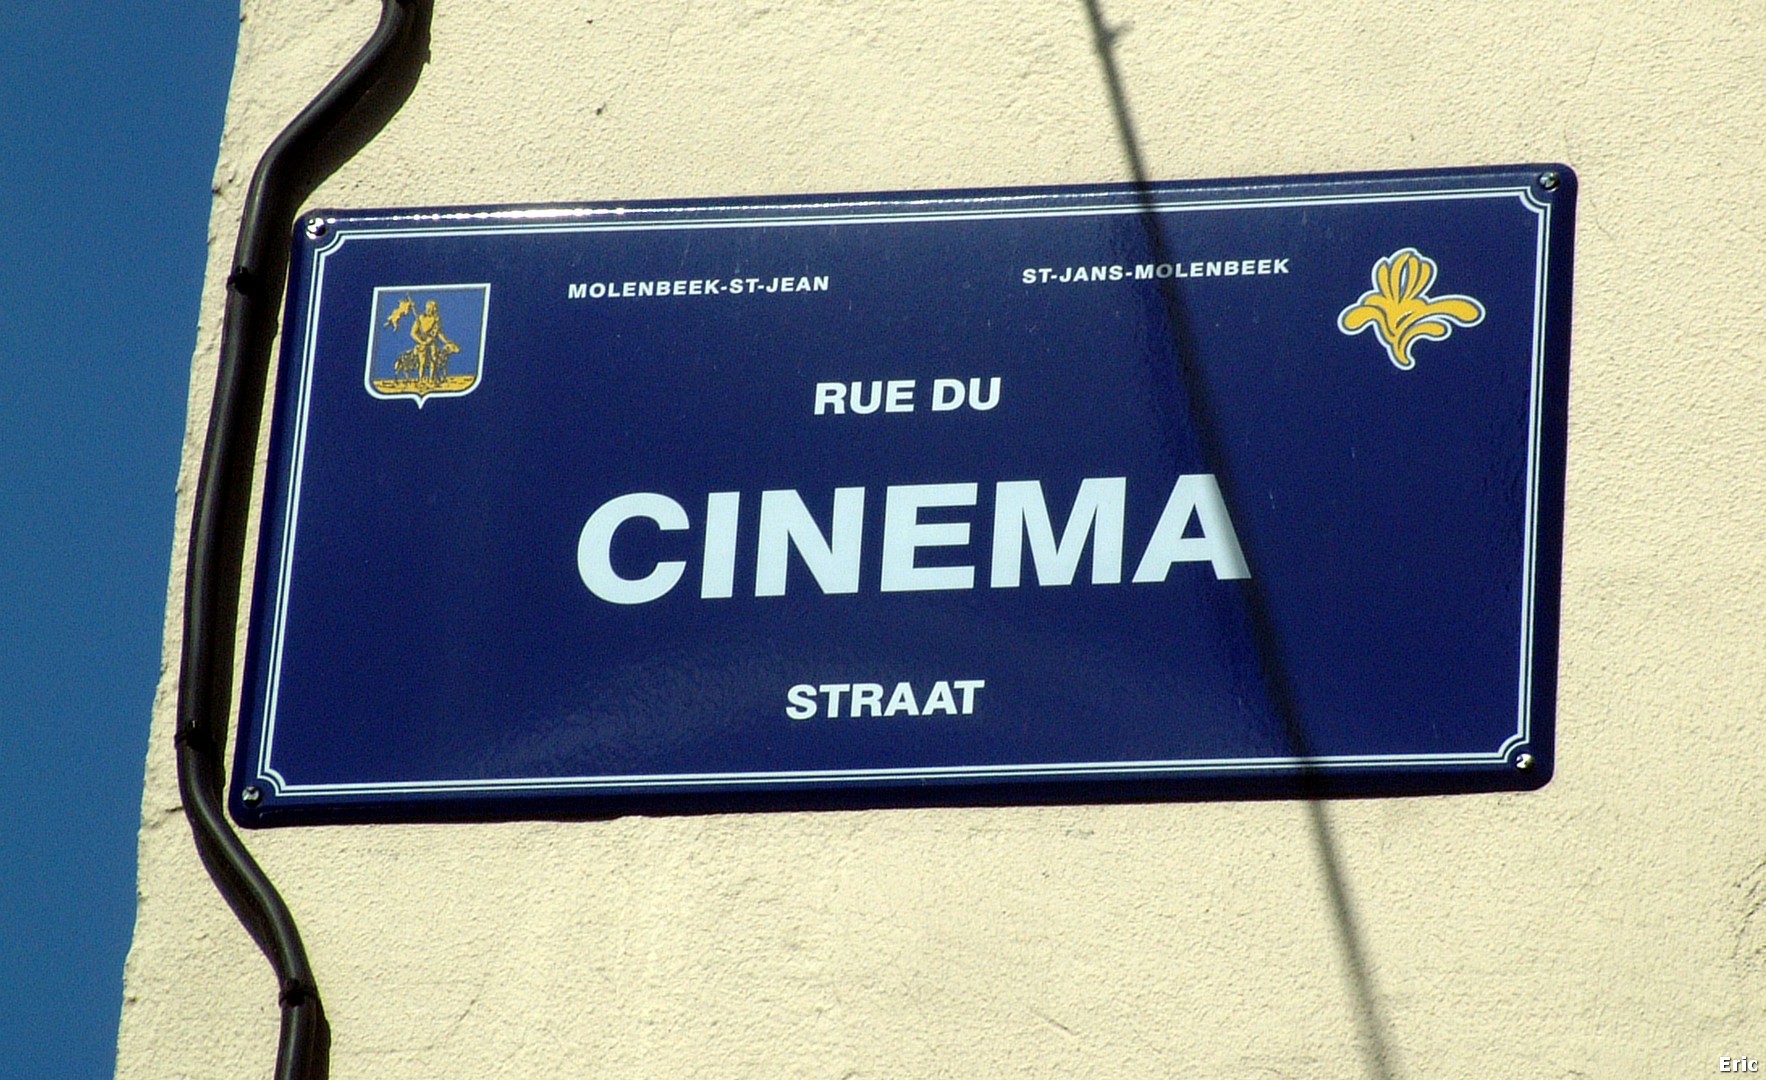 Rue du Cinma